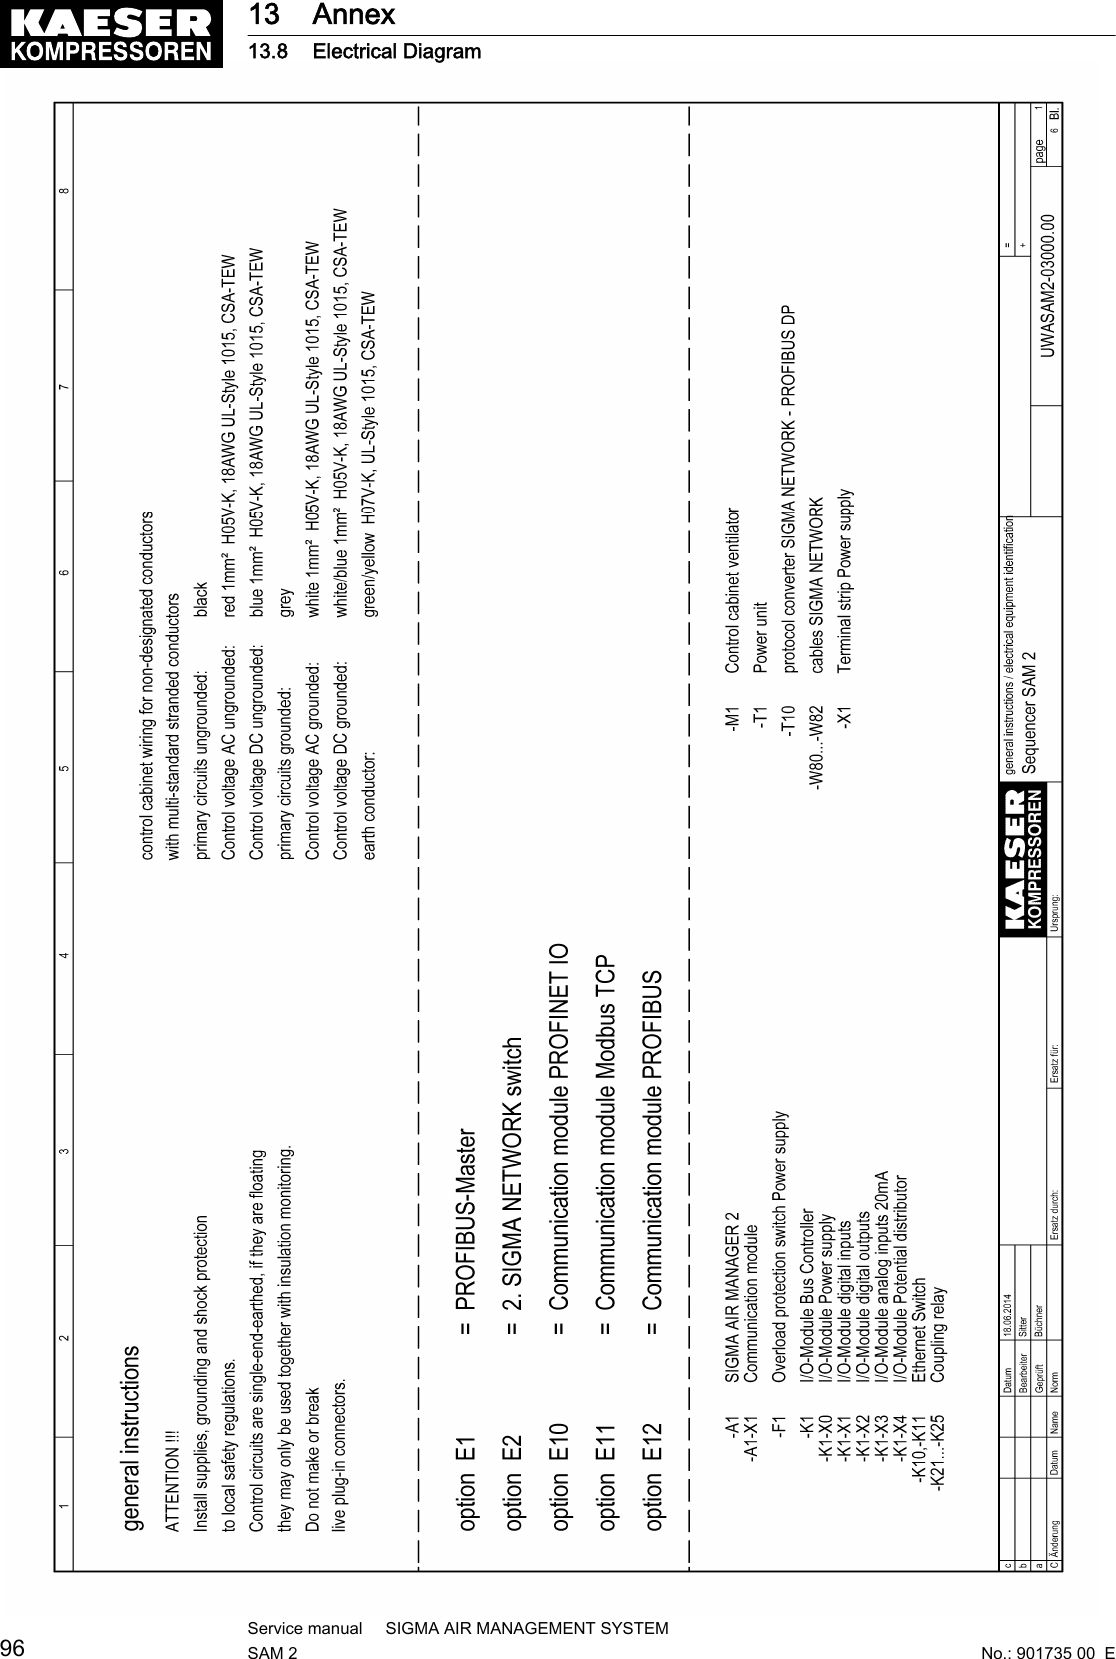 13 Annex13.8 Electrical Diagram96Service manual     SIGMA AIR MANAGEMENT SYSTEMSAM 2  No.: 901735 00  E